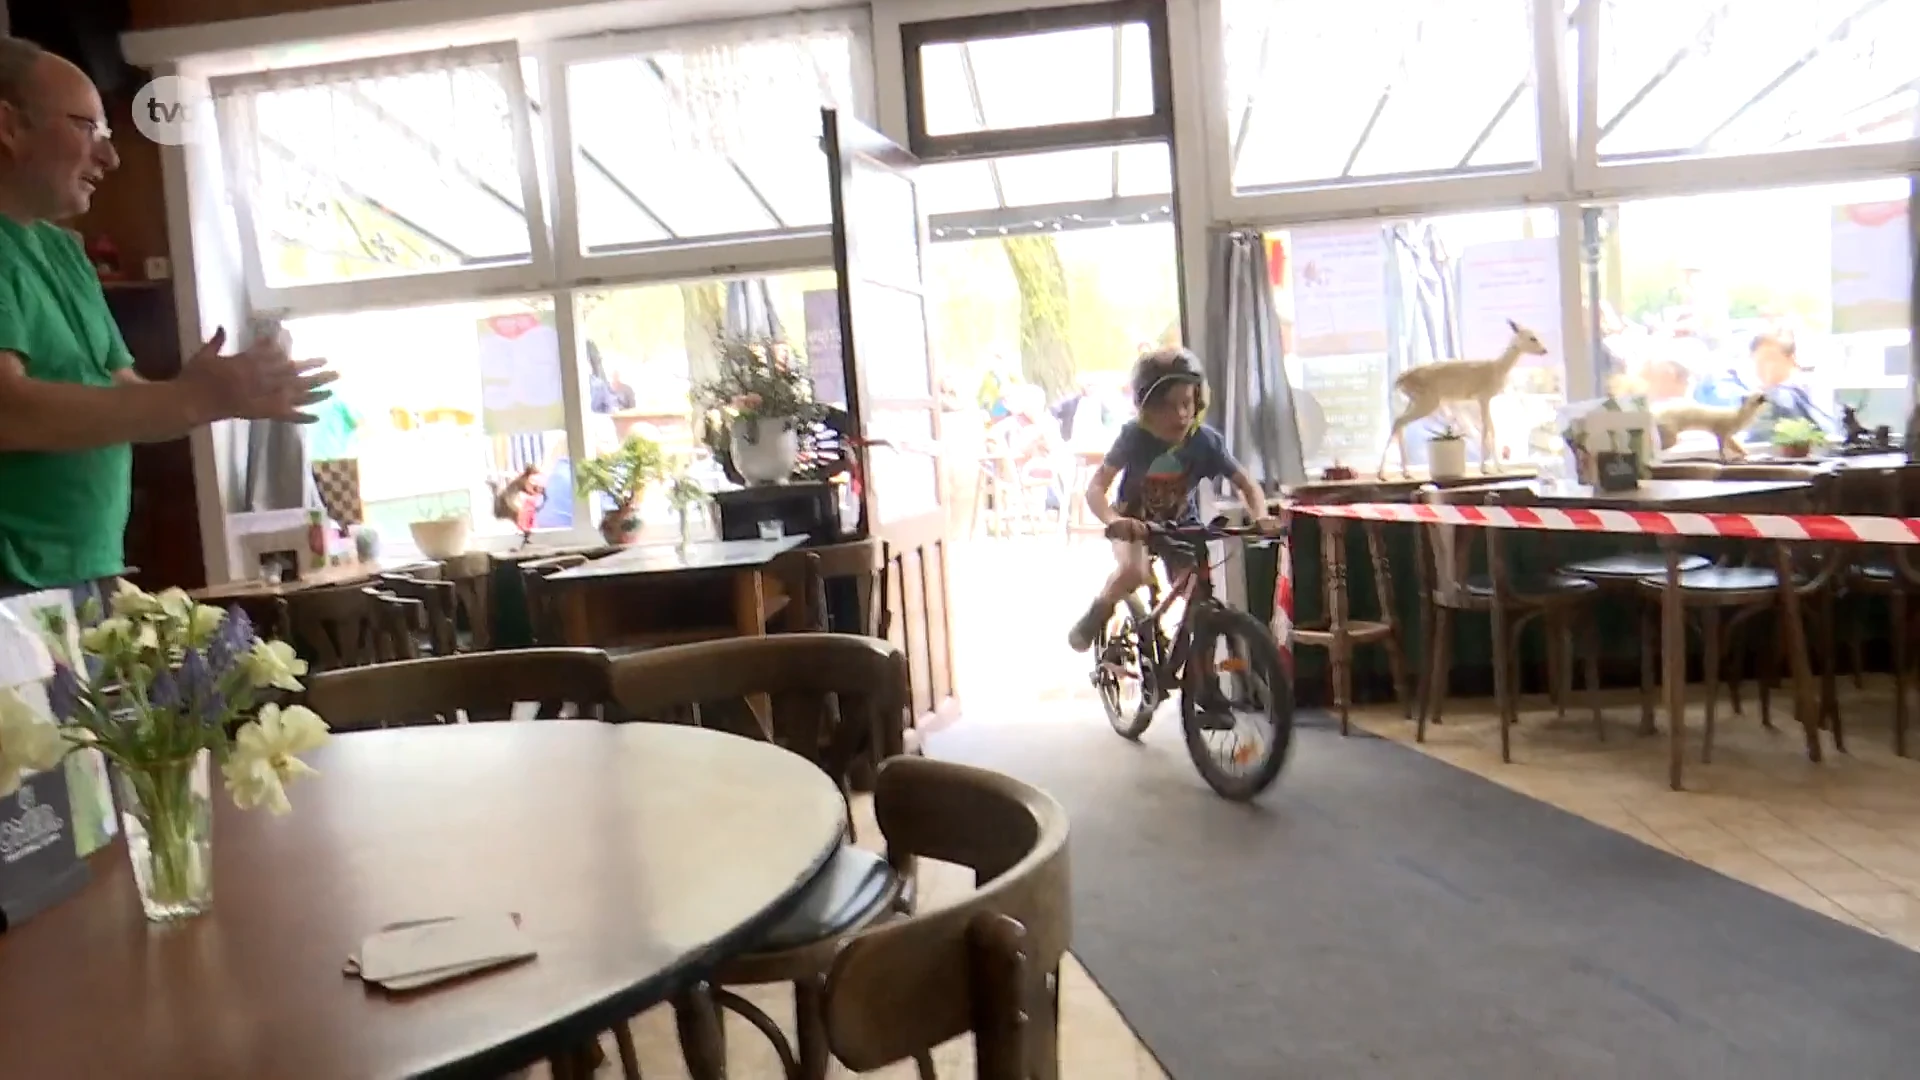 Café Bij Stinne in Meldert viert tiende verjaardag met cyclocross... dwars door de kroeg!